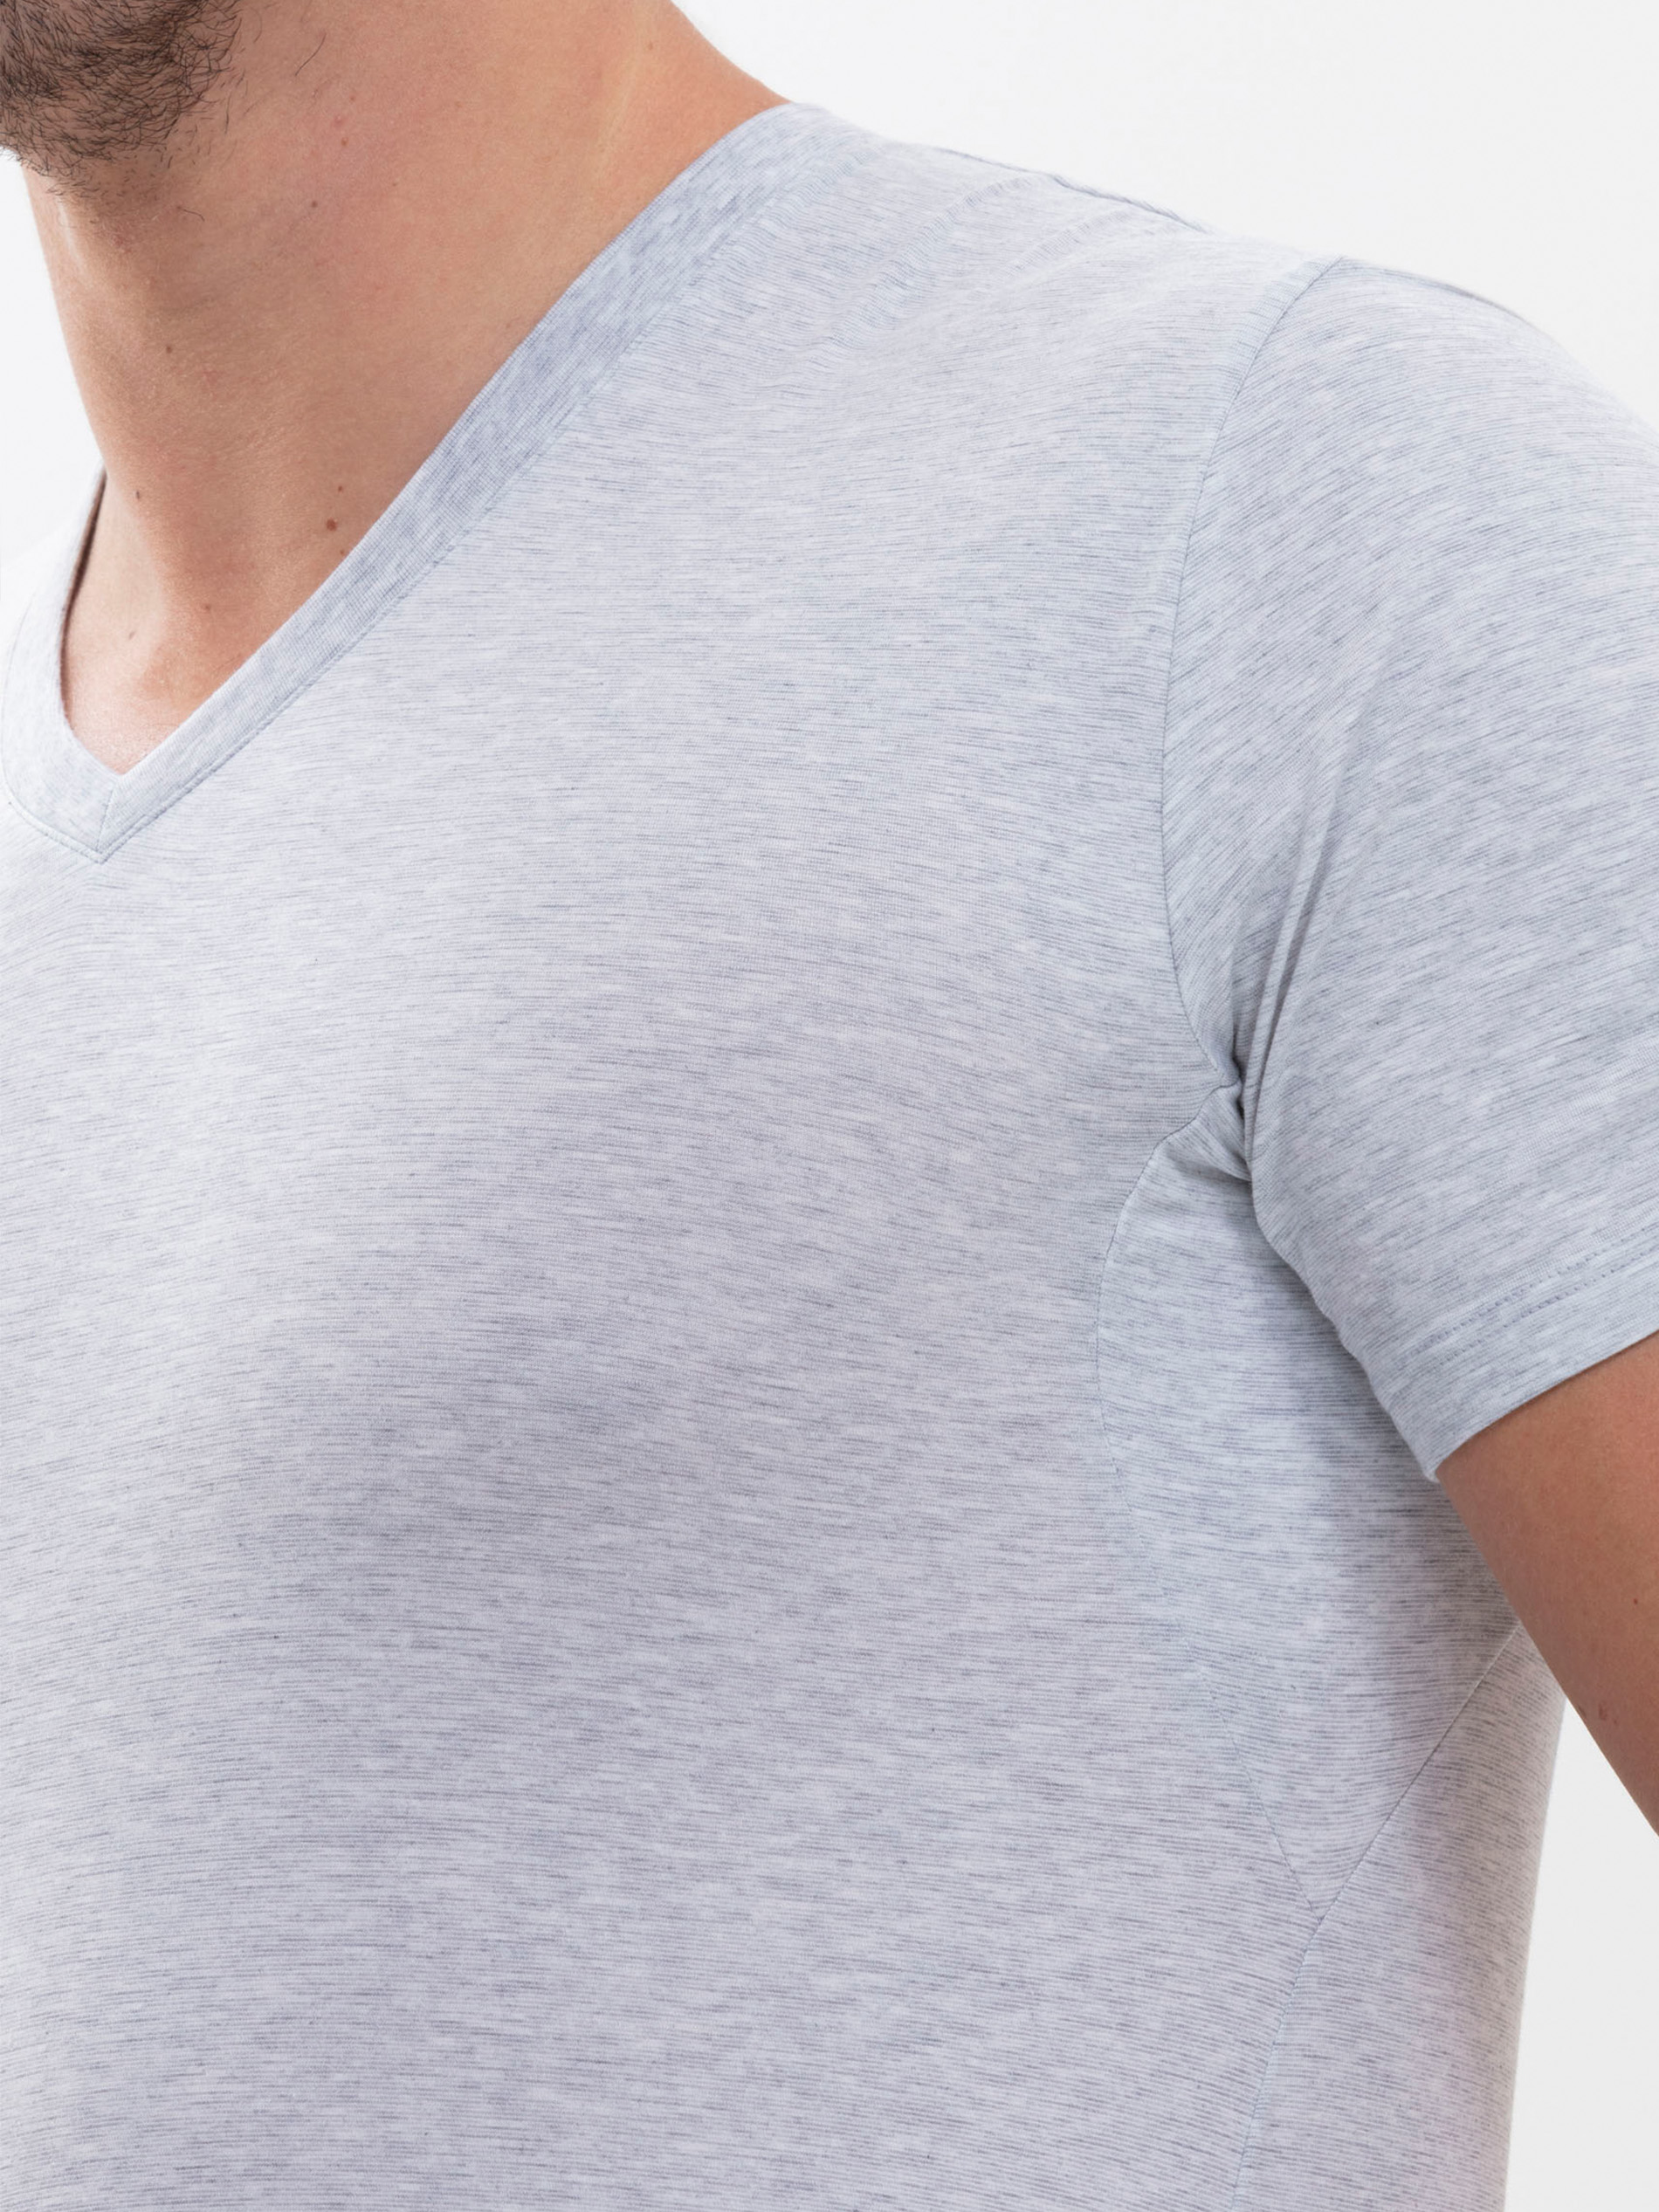 Stoffeinsatz mit den COOLMAX®-Fasern getragen am V-Neck Shirt in Light Grey Melange am Model, die Nähte sind nahezu unsichtbar | mey® 